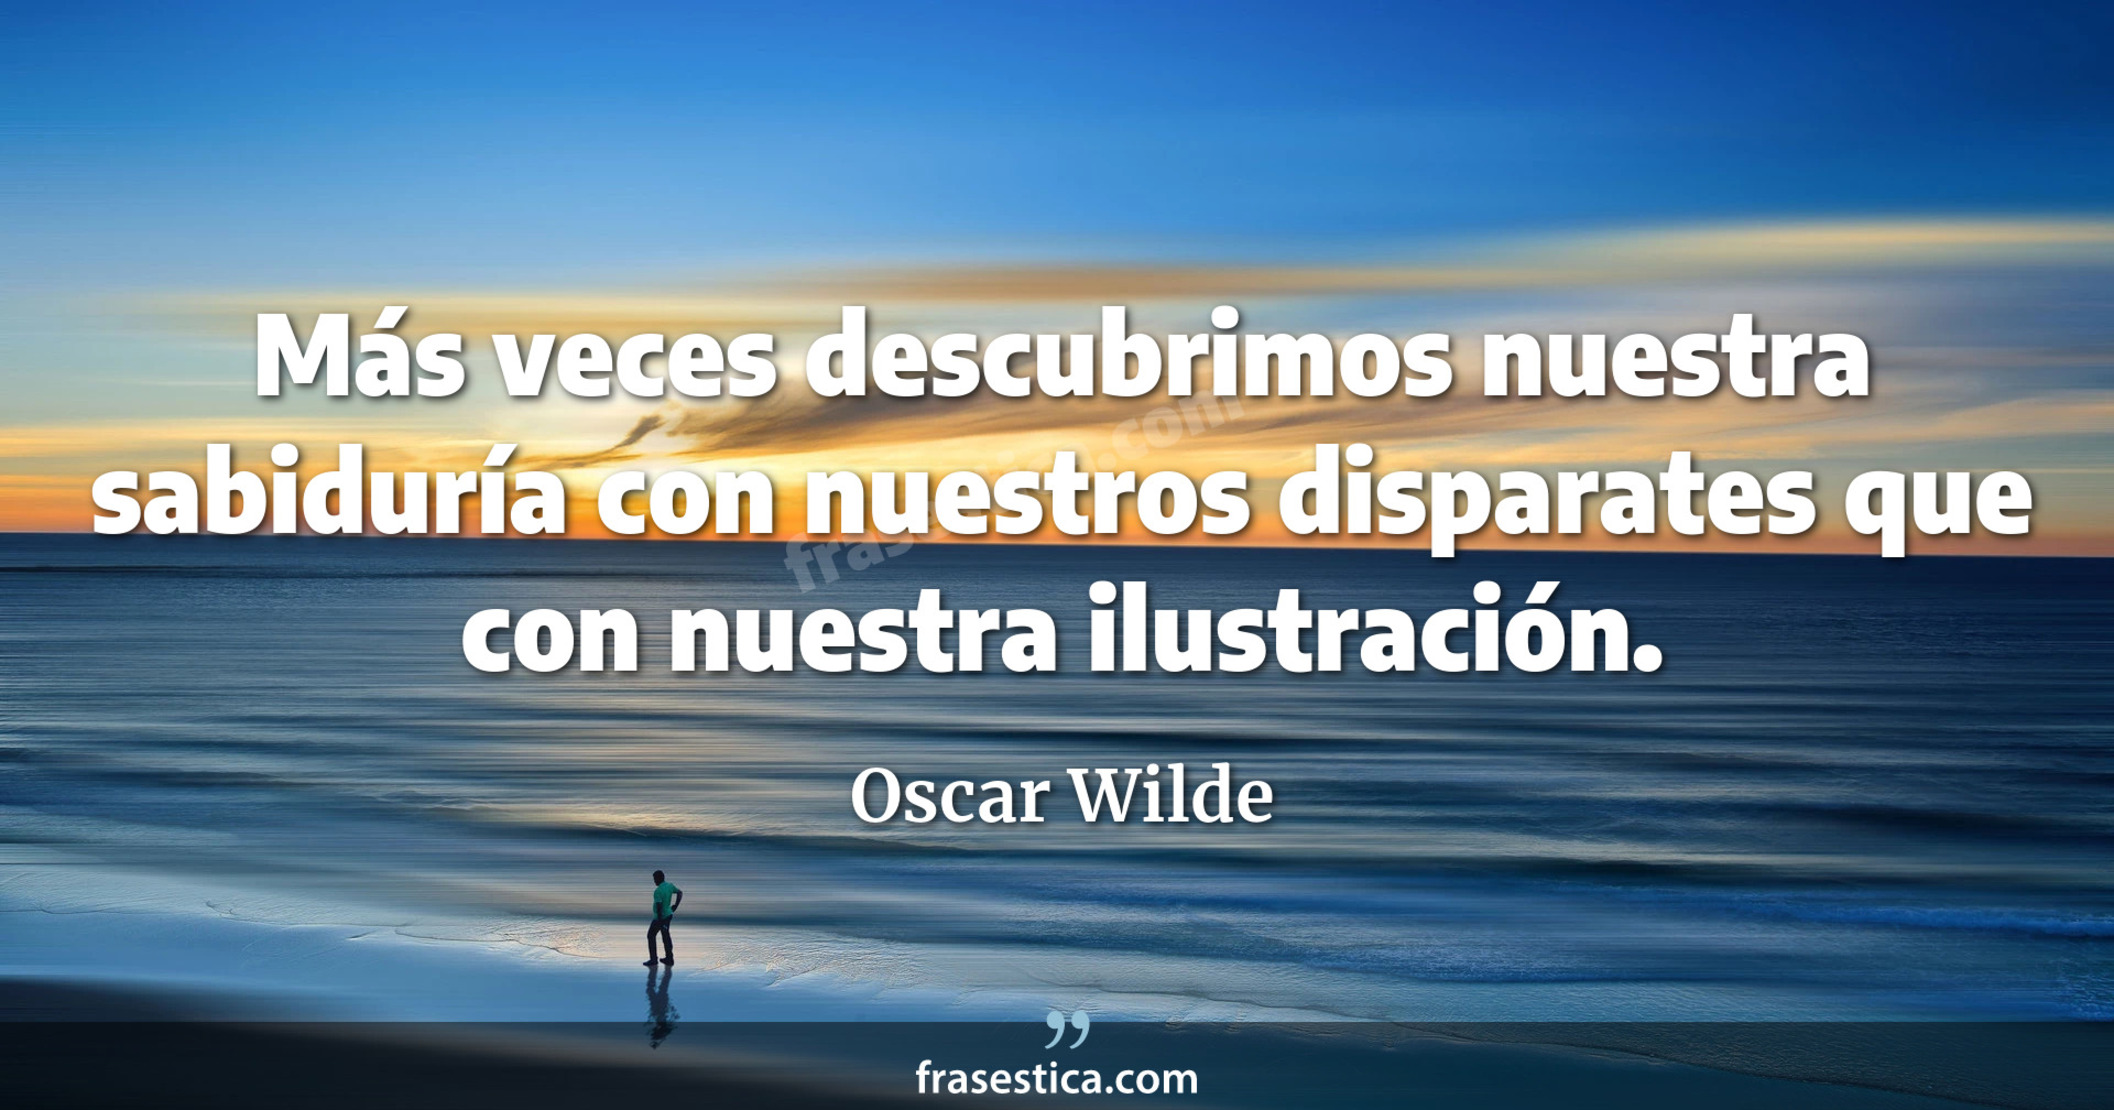 Más veces descubrimos nuestra sabiduría con nuestros disparates que con nuestra ilustración. - Oscar Wilde